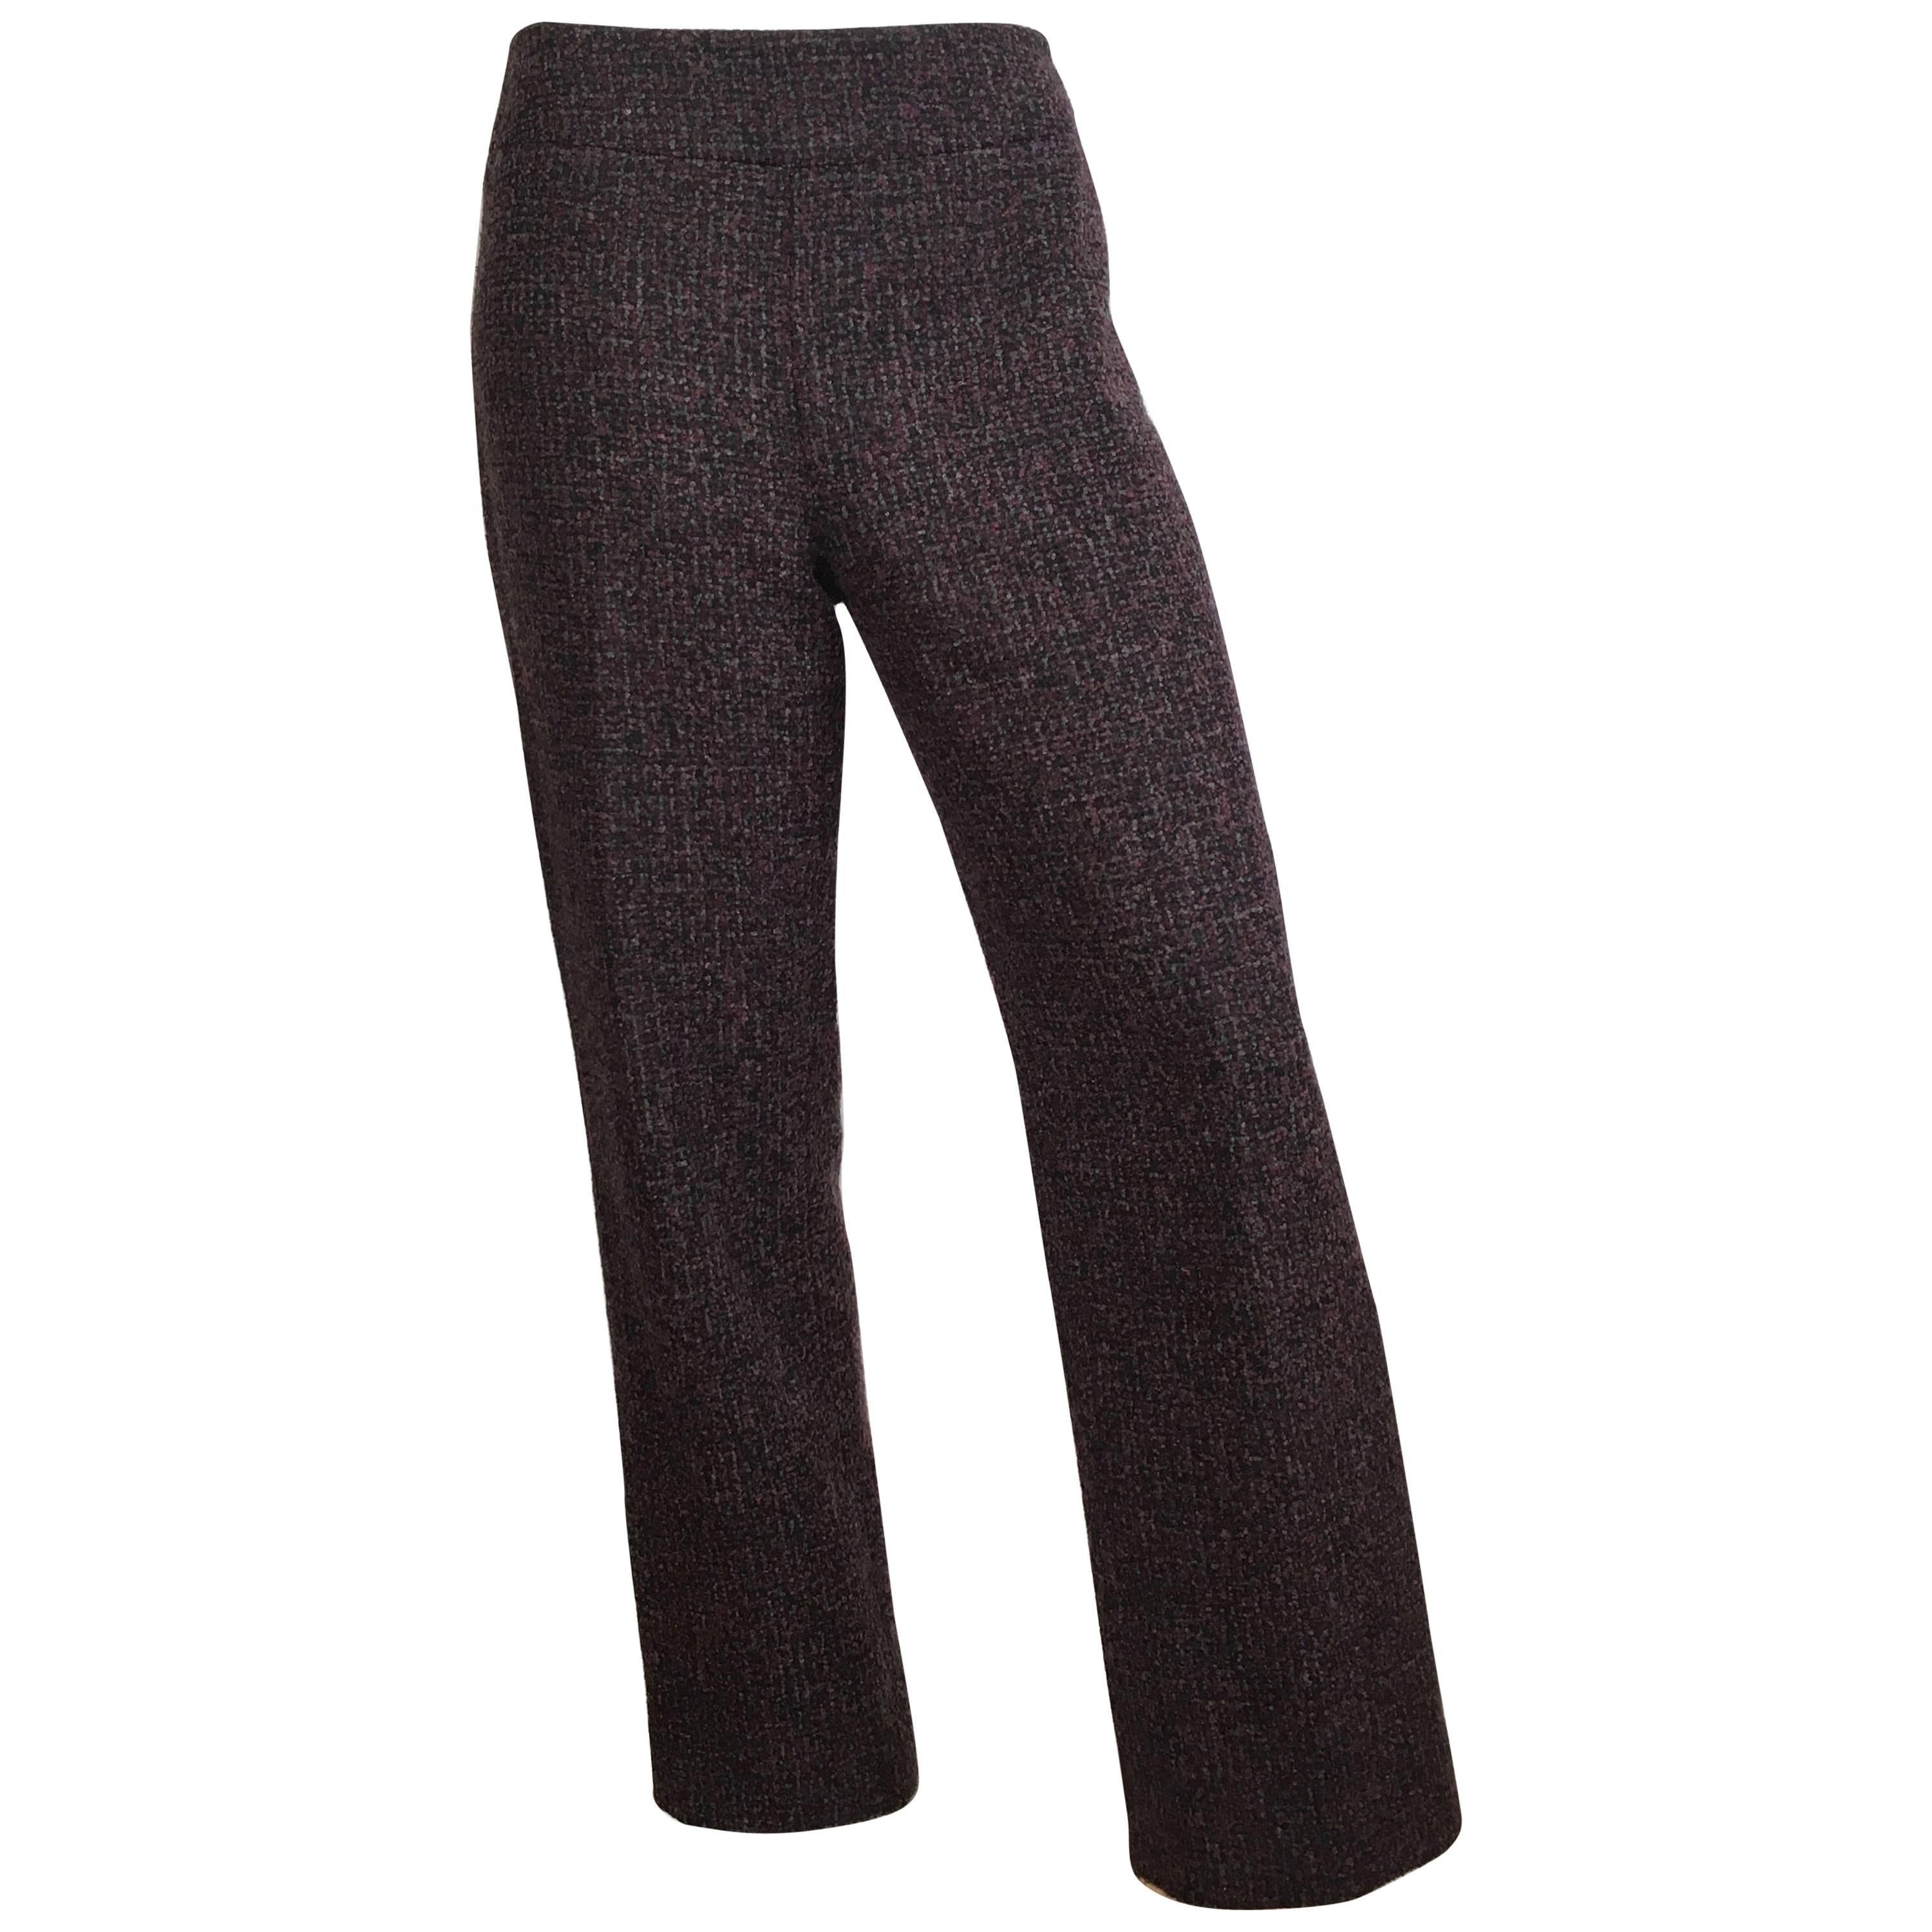 Oscar de la Renta Nubby Flannel Wool Pants Size 6. Made in Italy. For Sale